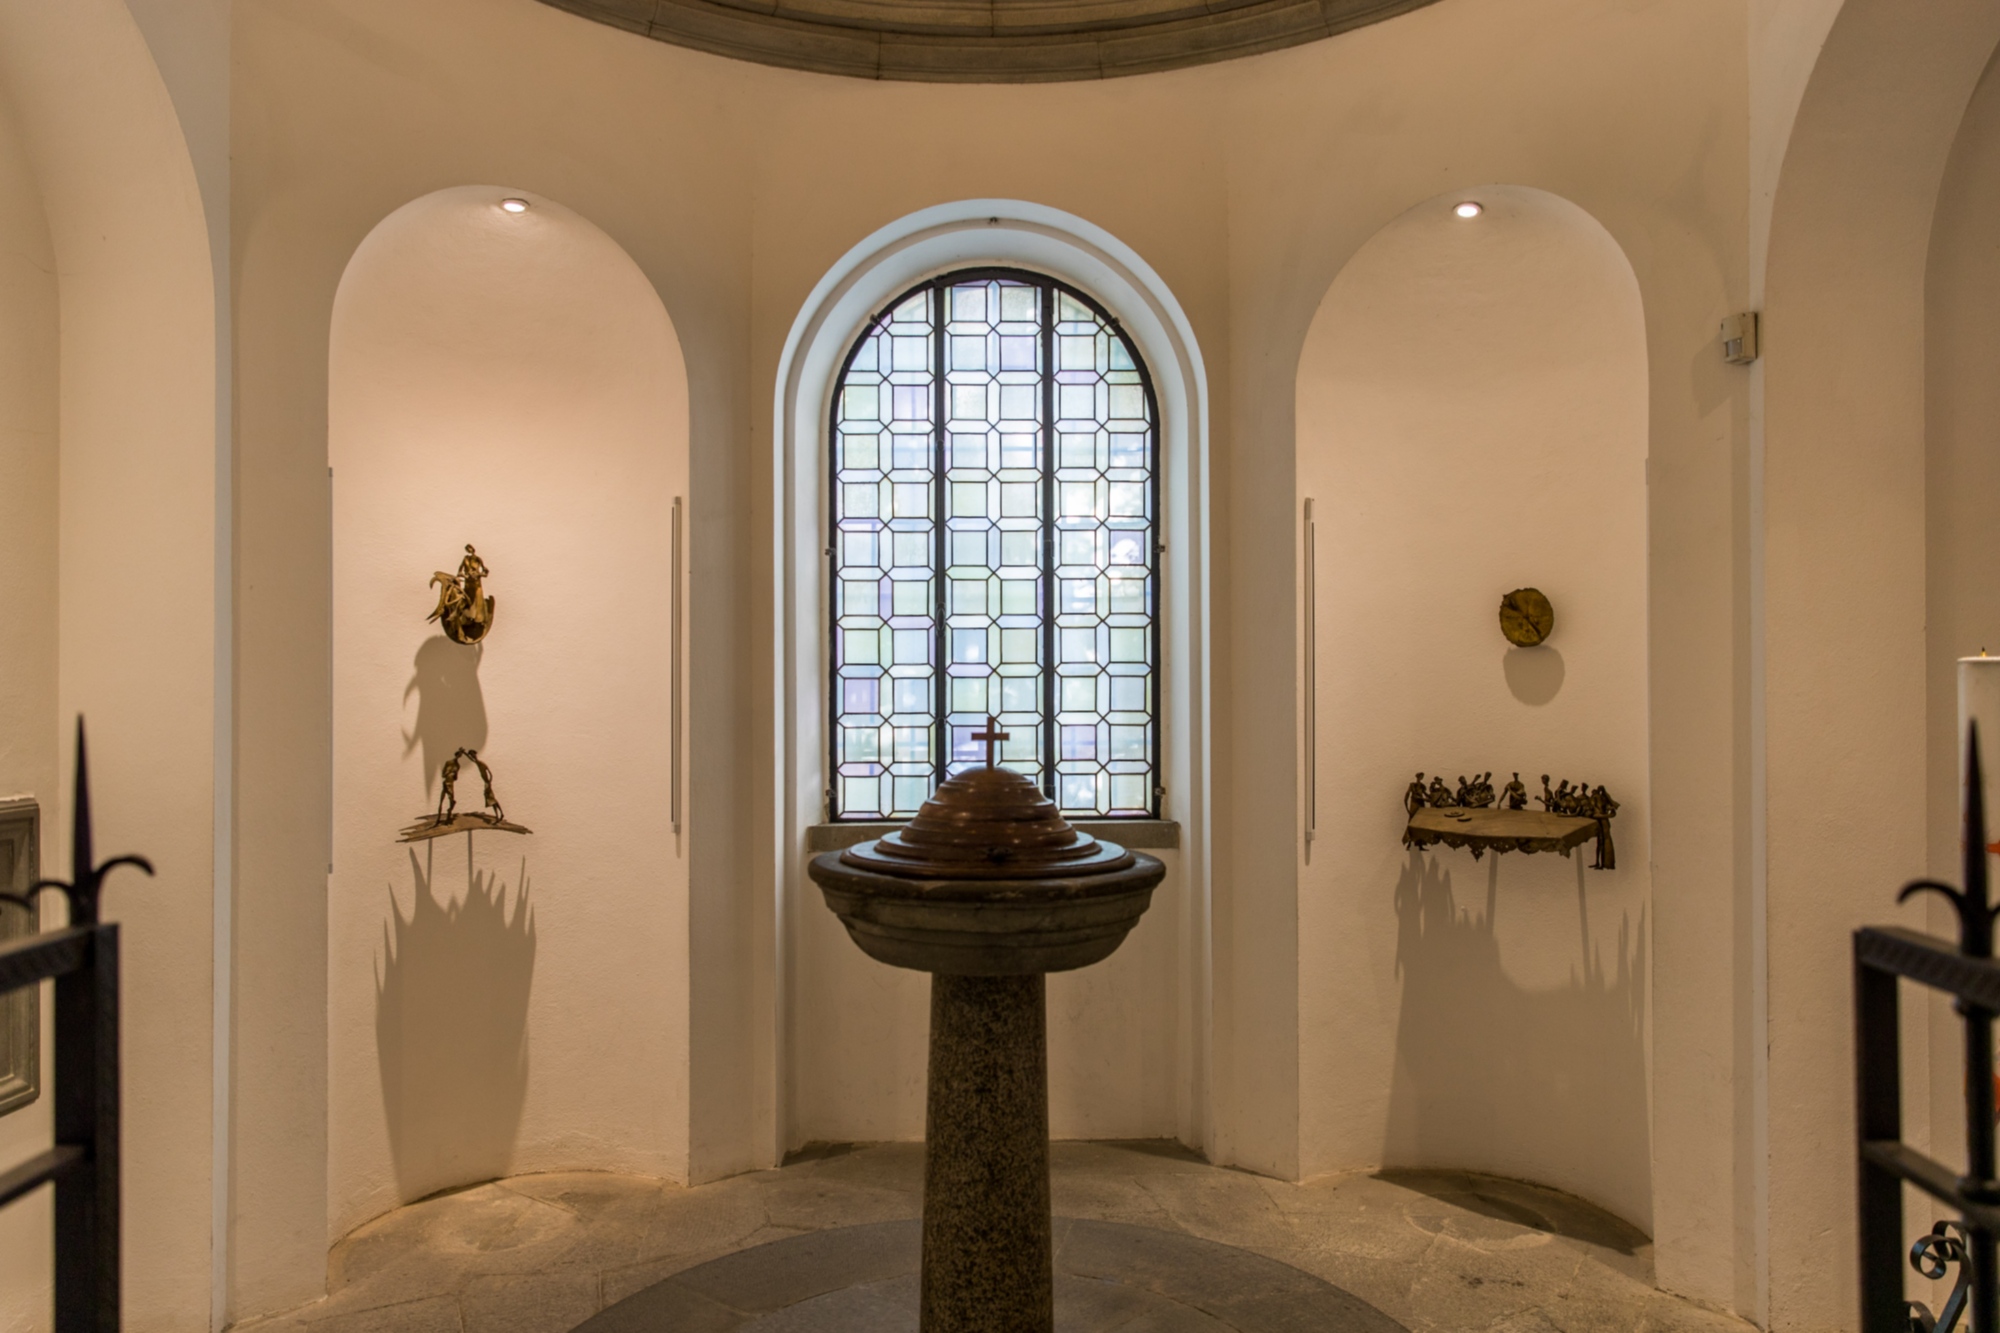 Das Taufbecken, in dem Leonardo getauft wurde, mit dem Skulpturenzyklus von Cecco Bonanotte